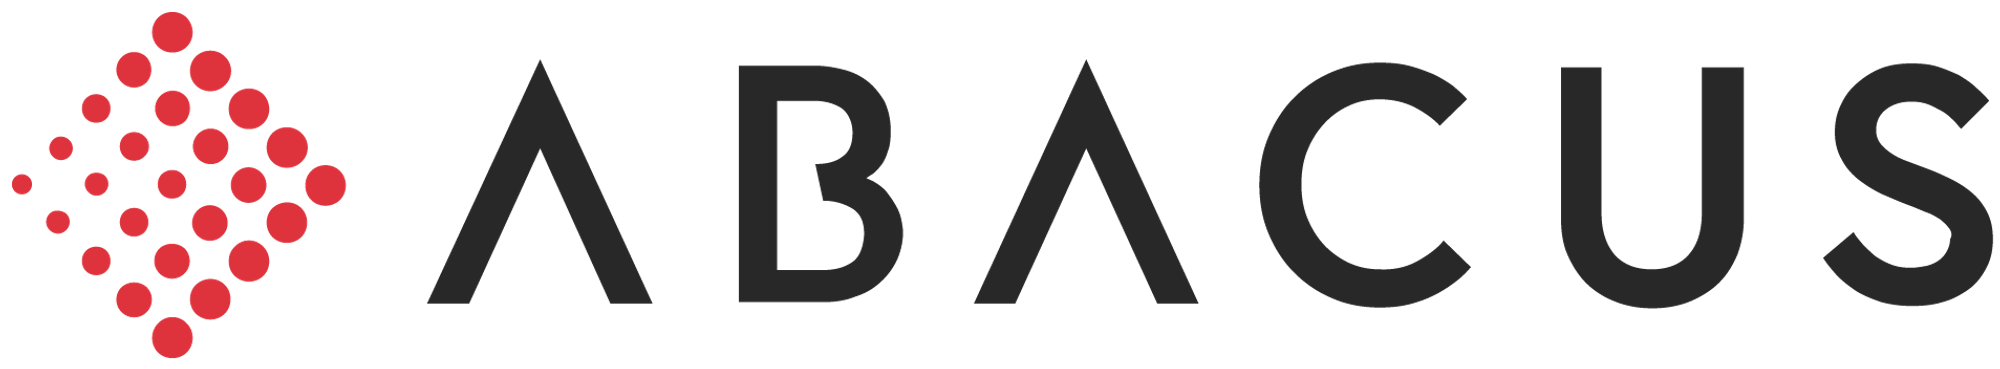 Abacus logo